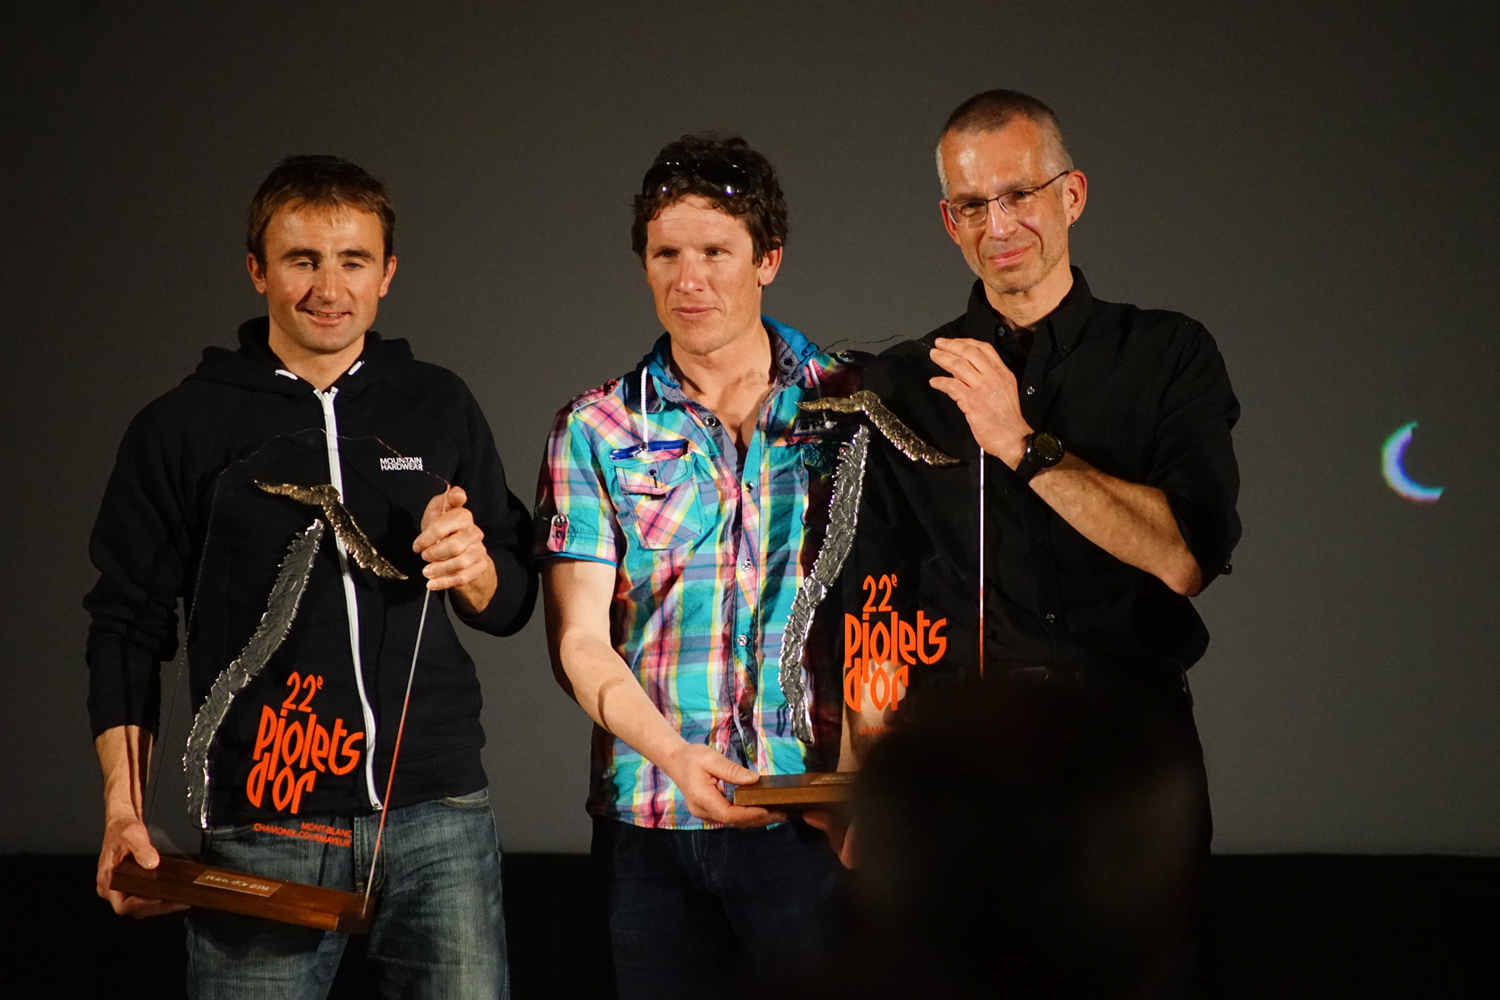 Ули Штек (Ueli Steck), Ян Вельстед (Ian Welsted) и Рафаэль Славински (Raphael Slawinski) получают награду "Золотой Ледоруб 2014" (Piolets d